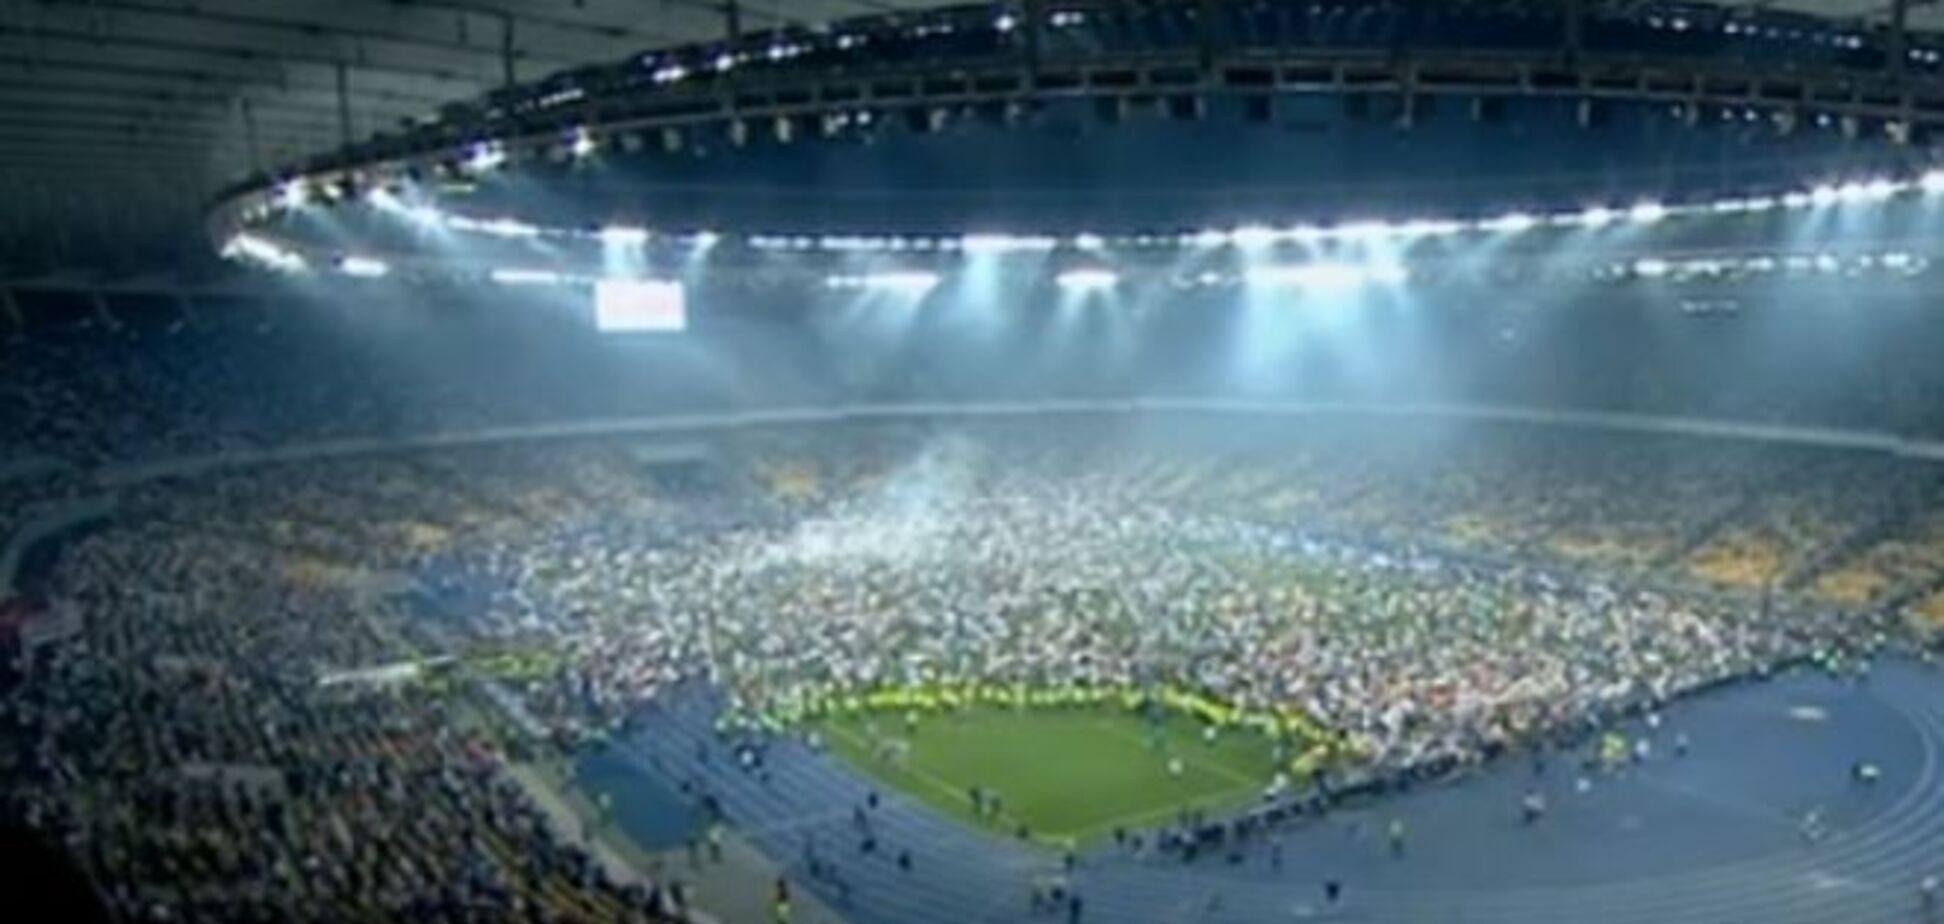 Дикие фанаты сорвали церемонию награждения Кубка Украины и сломали ворота